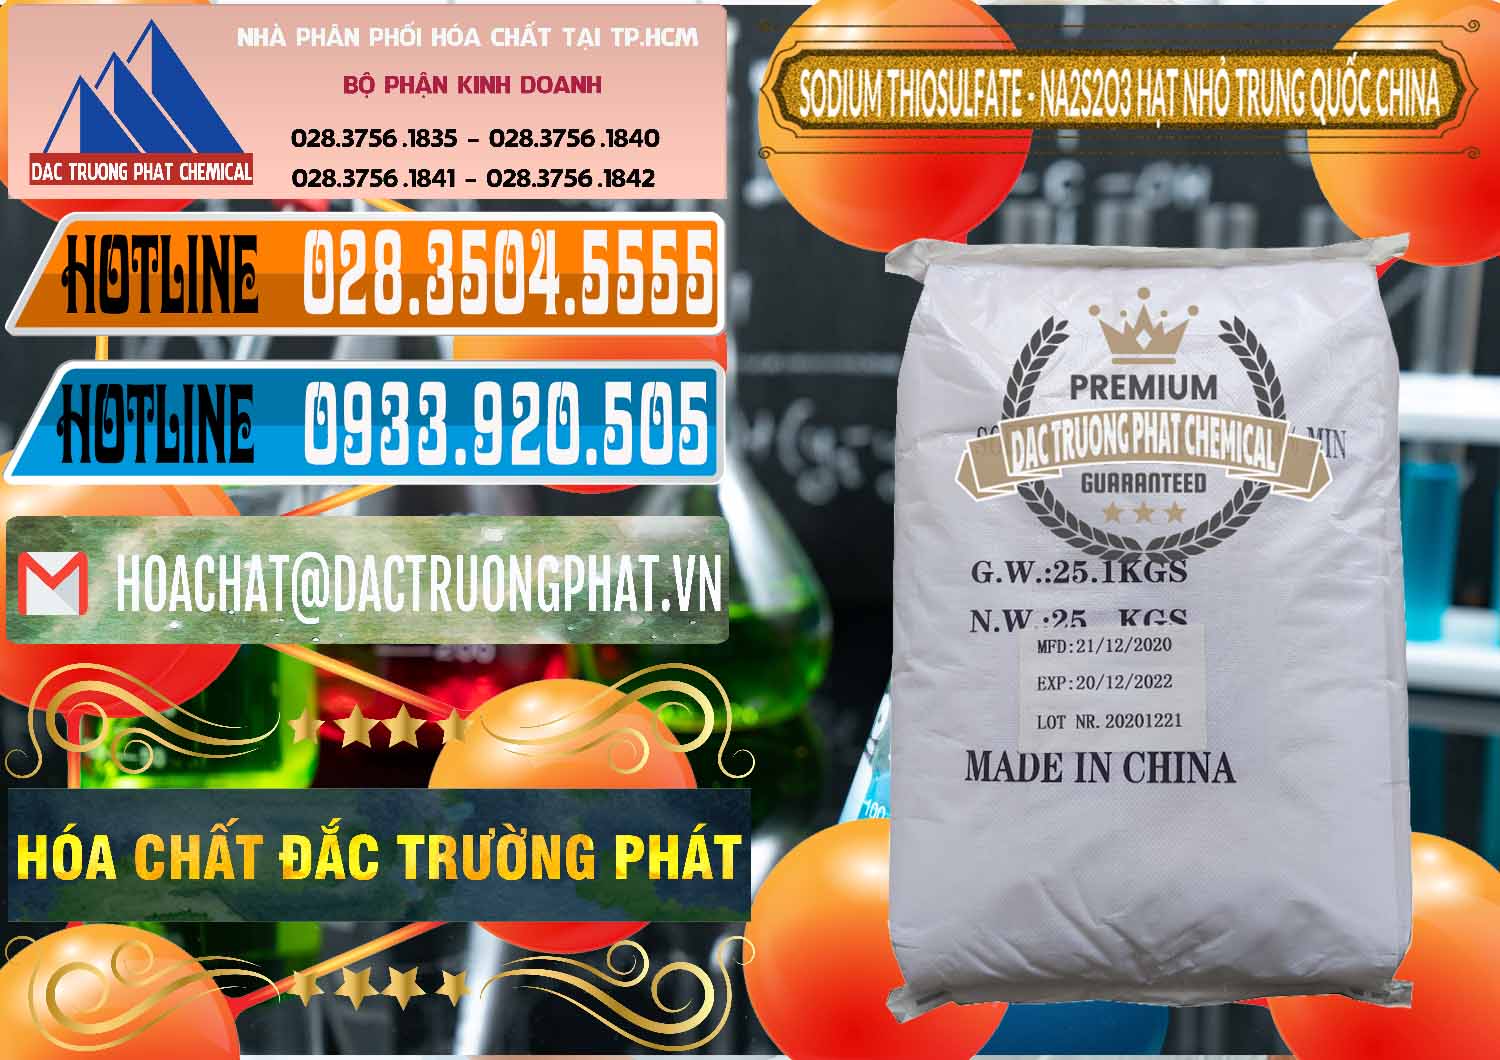 Nơi nhập khẩu ( bán ) Sodium Thiosulfate - NA2S2O3 Hạt Nhỏ Trung Quốc China - 0204 - Công ty nhập khẩu & cung cấp hóa chất tại TP.HCM - stmp.net